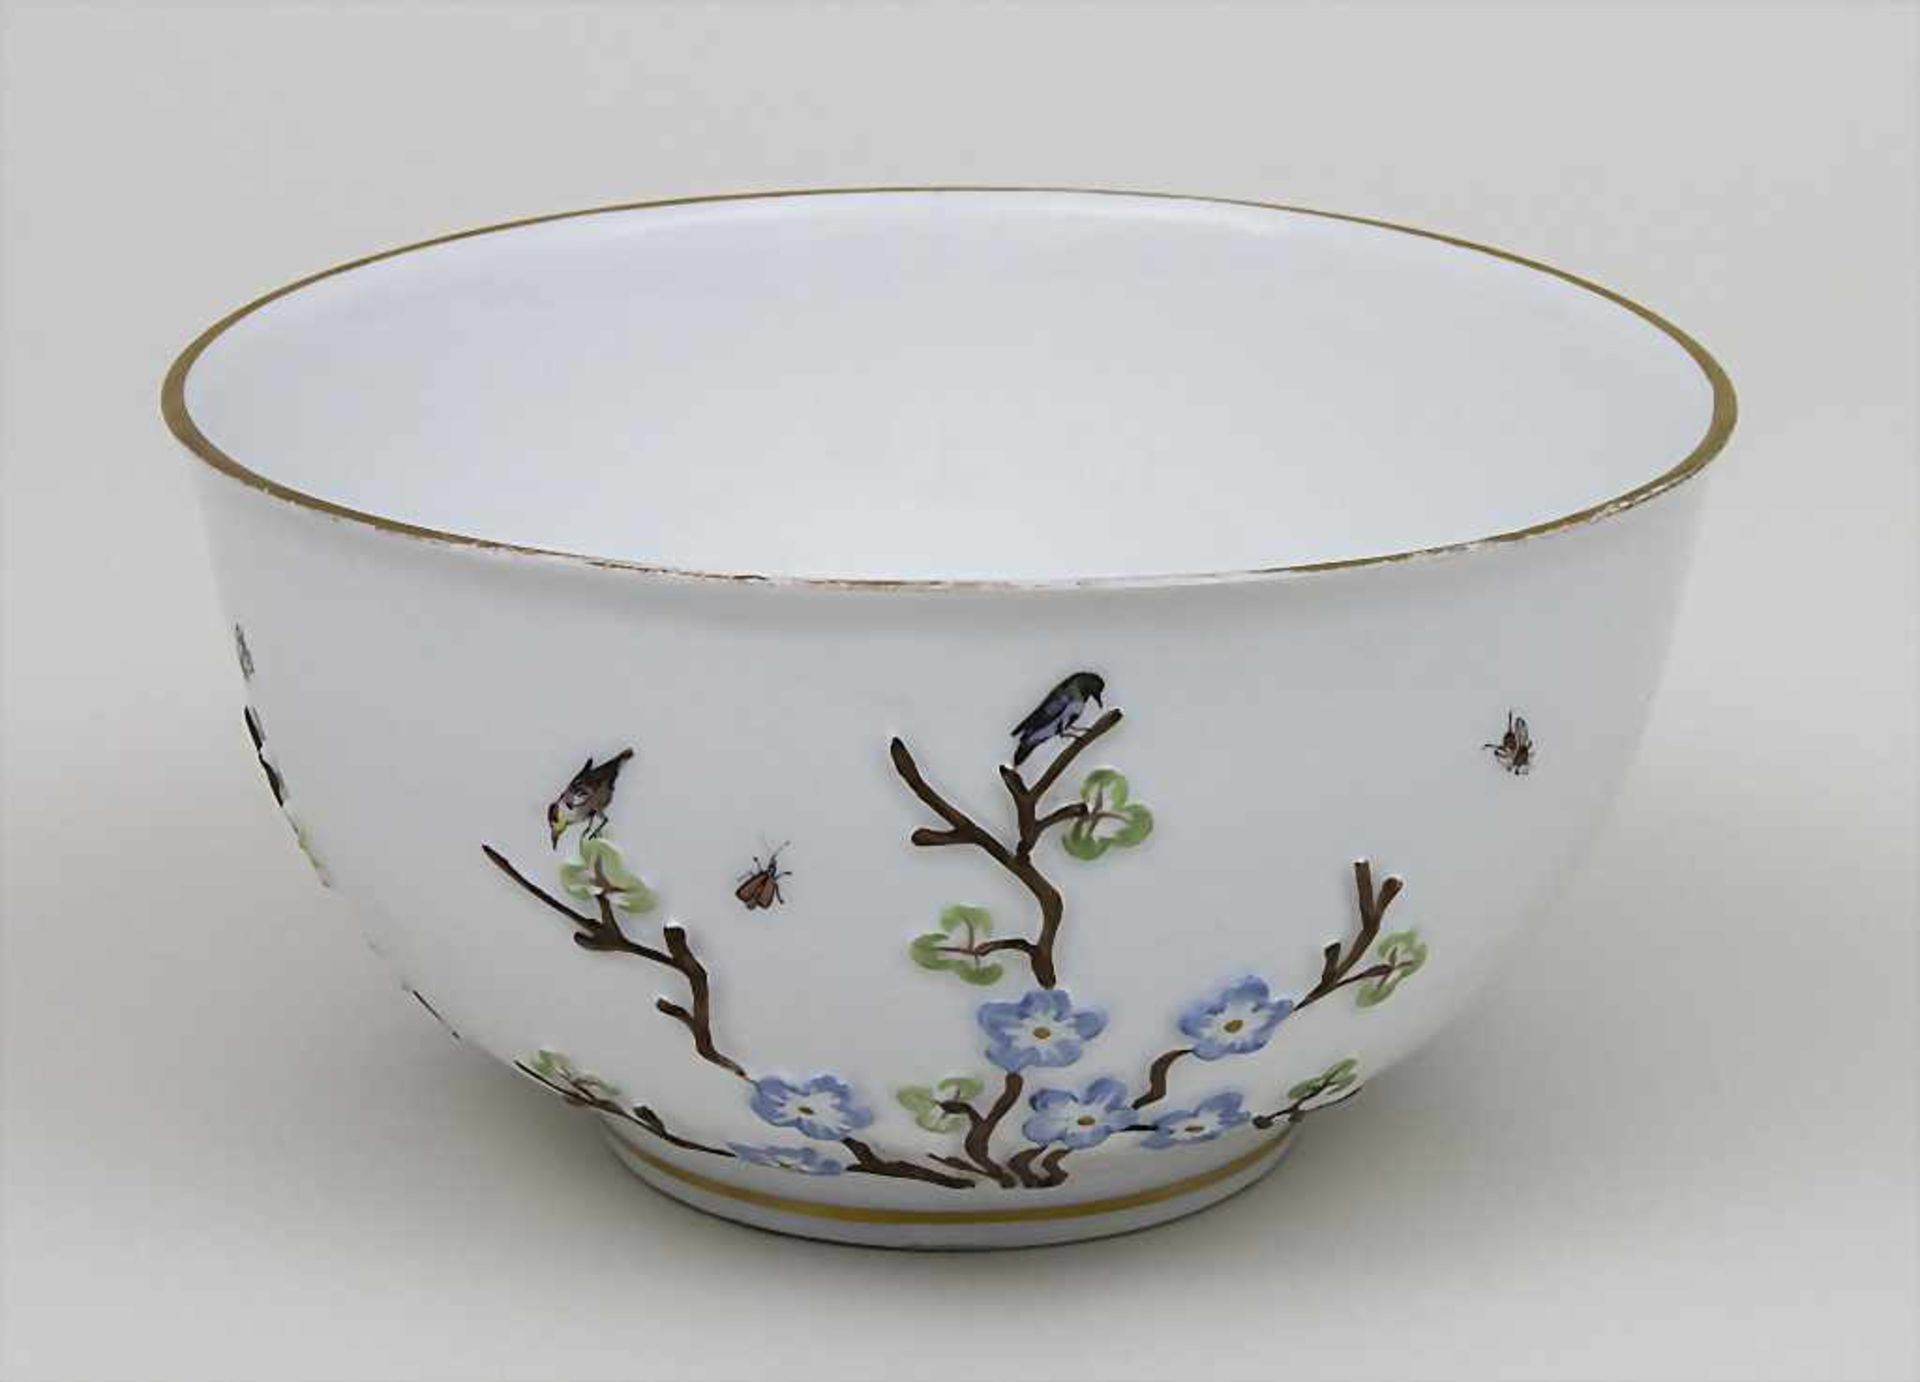 Große Kumme mit Kirschblütenzweigen, Vögeln und Insekten / A bowl with cherry blossom branches,